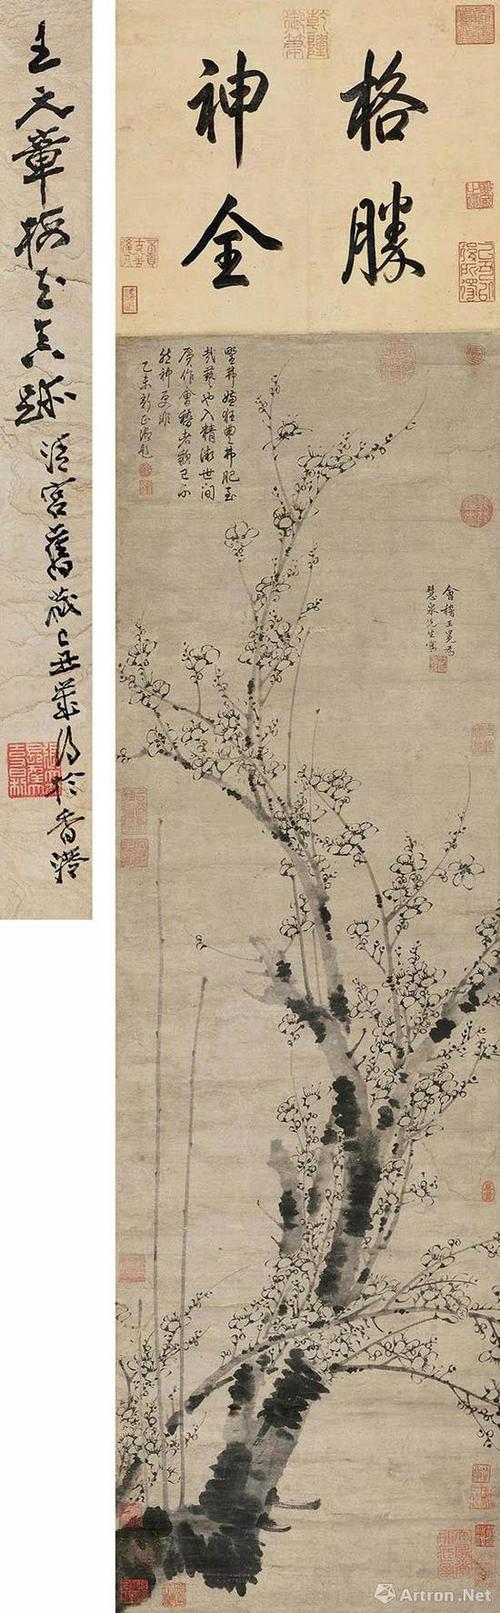 元 王冕《墨梅图》立轴 张大千旧藏 2010年北京保利拍品 成交价5700